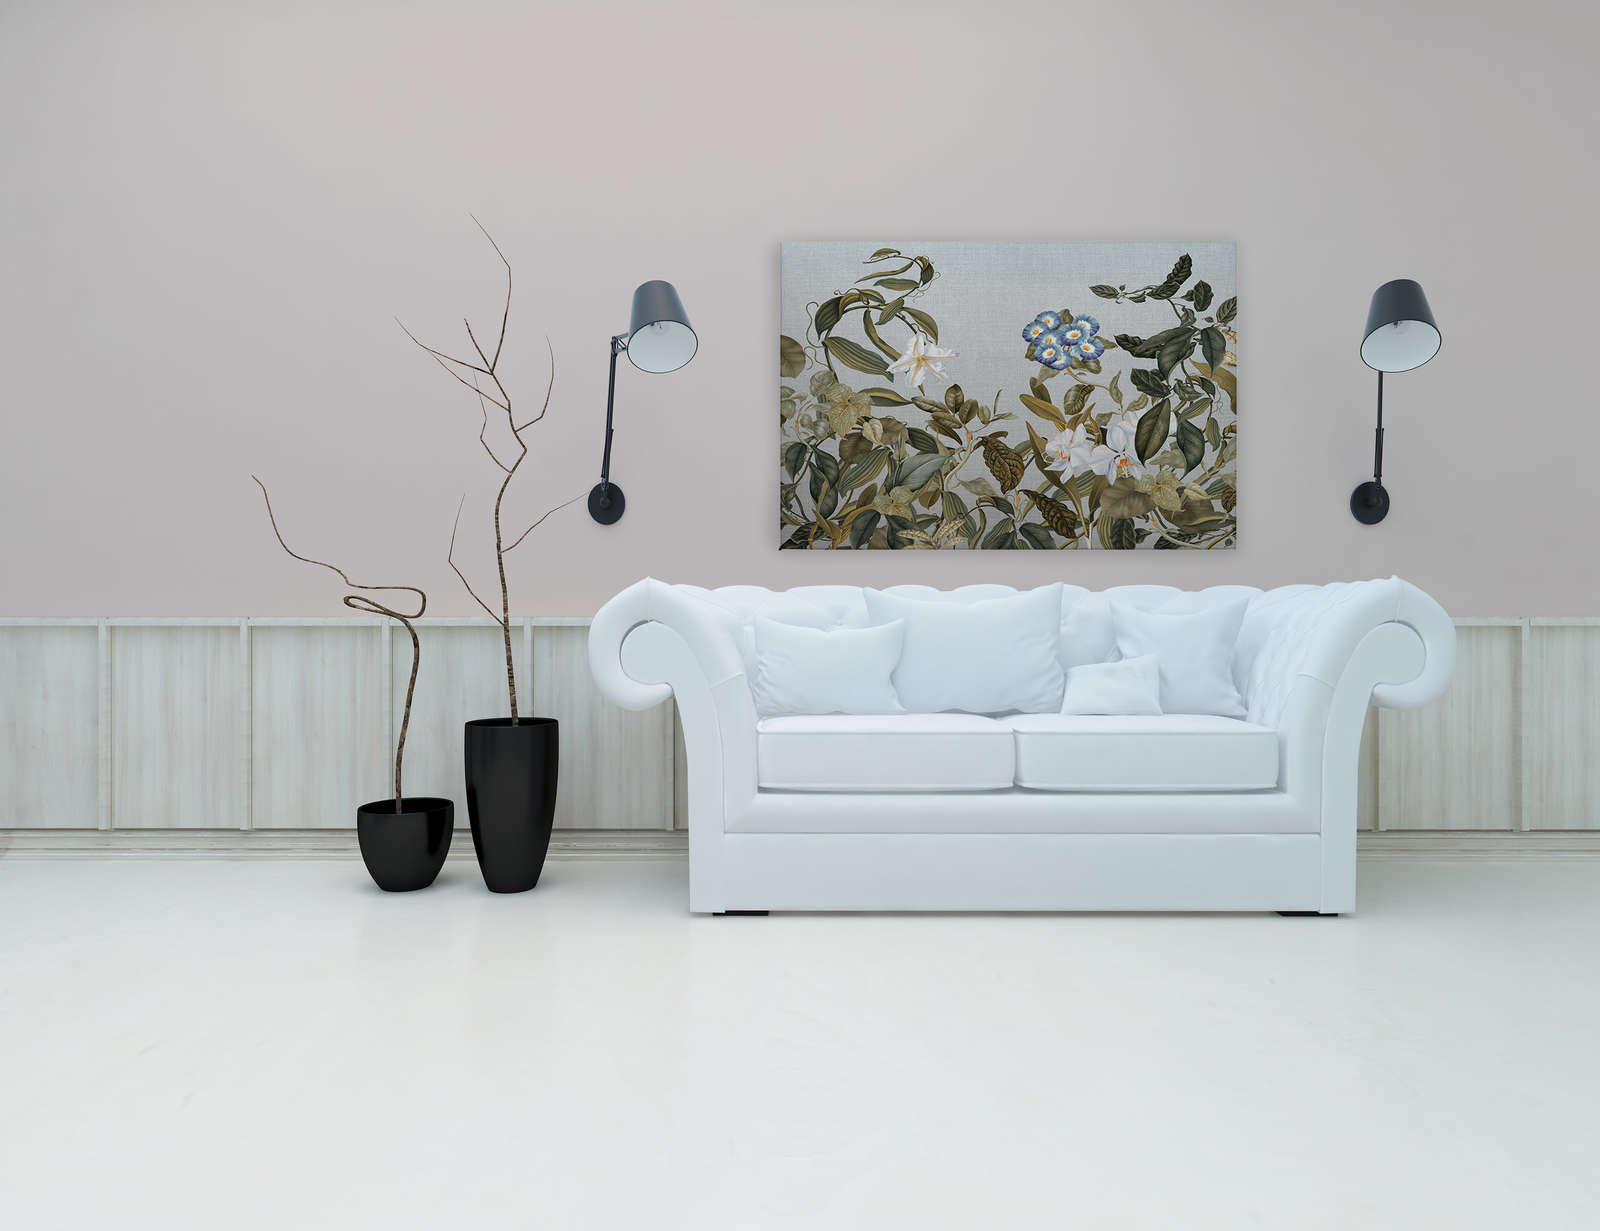             Tableau toile style botanique fleurs, feuilles & look textile - 1,20 m x 0,80 m
        